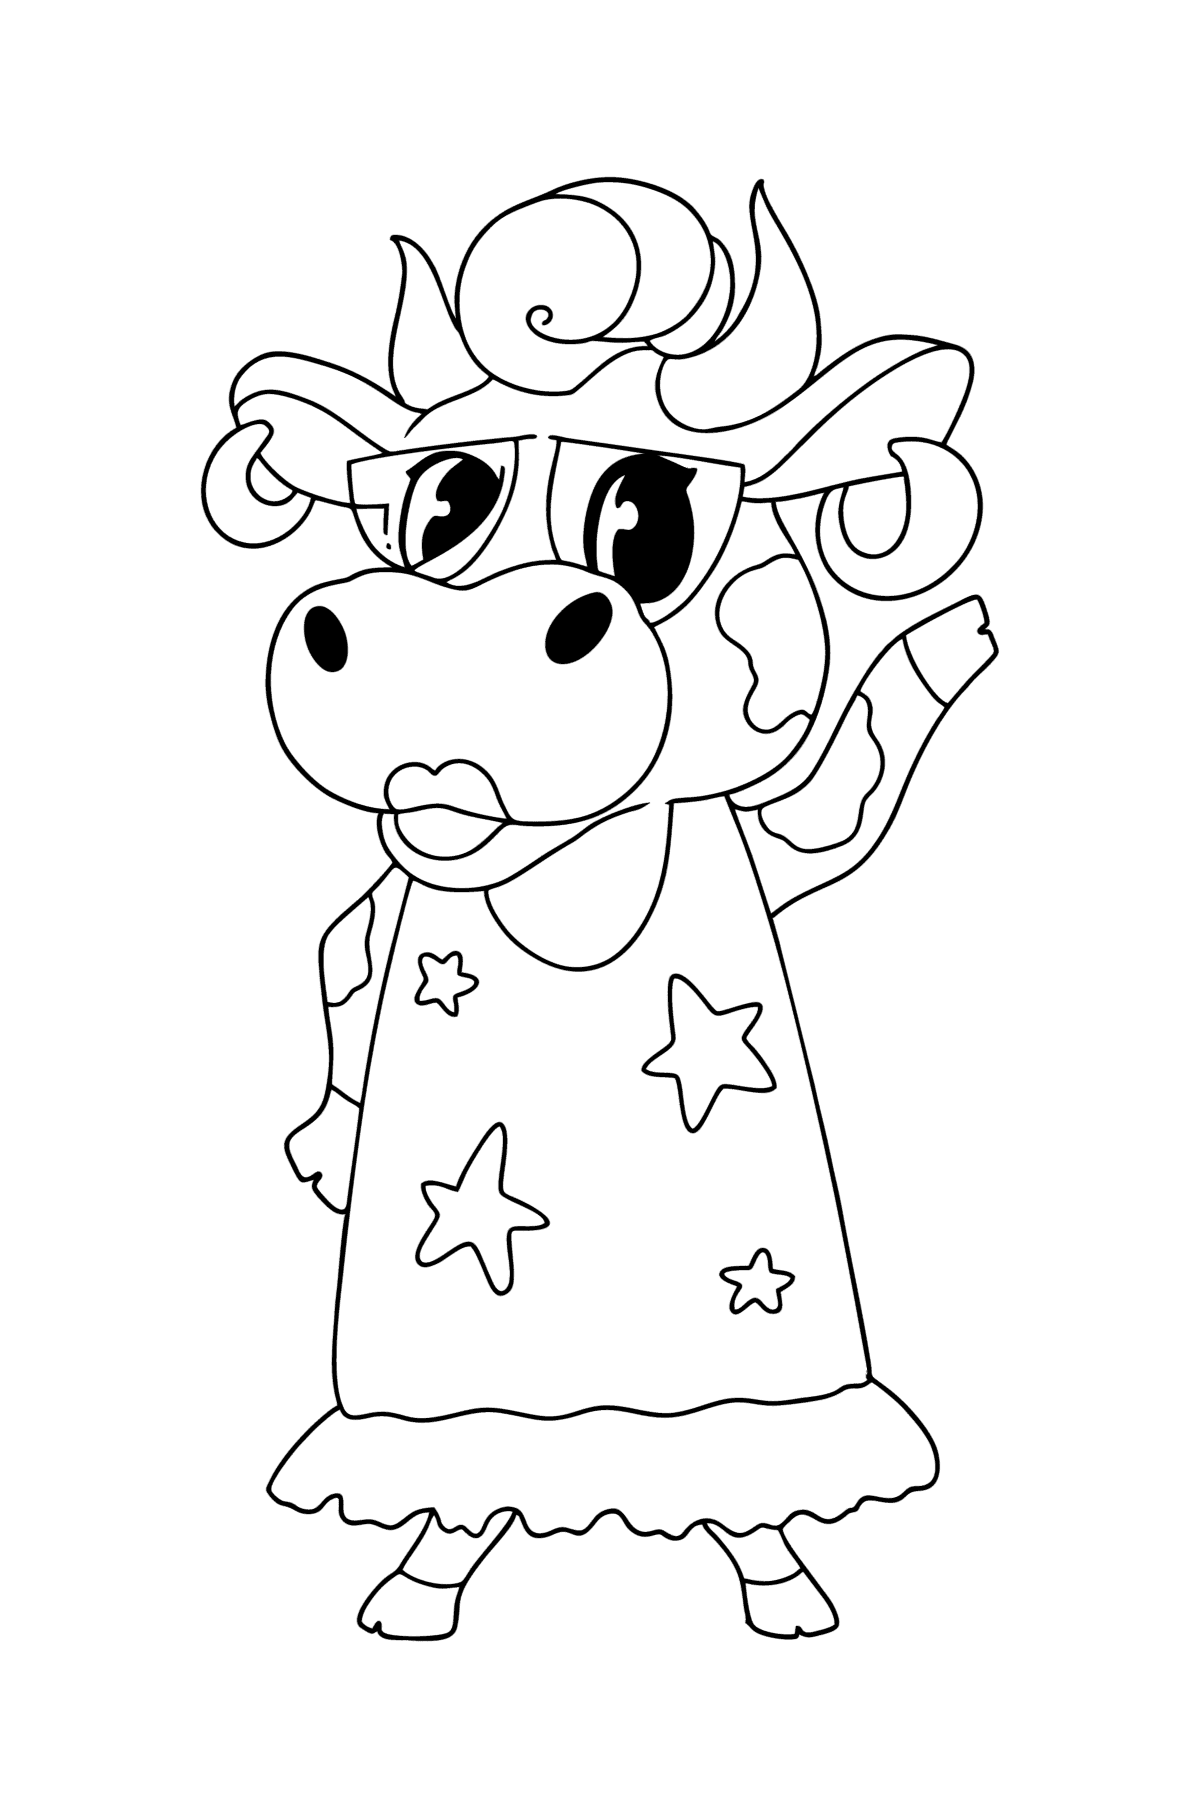 Раскраска корова антистресс - Картинки для Детей